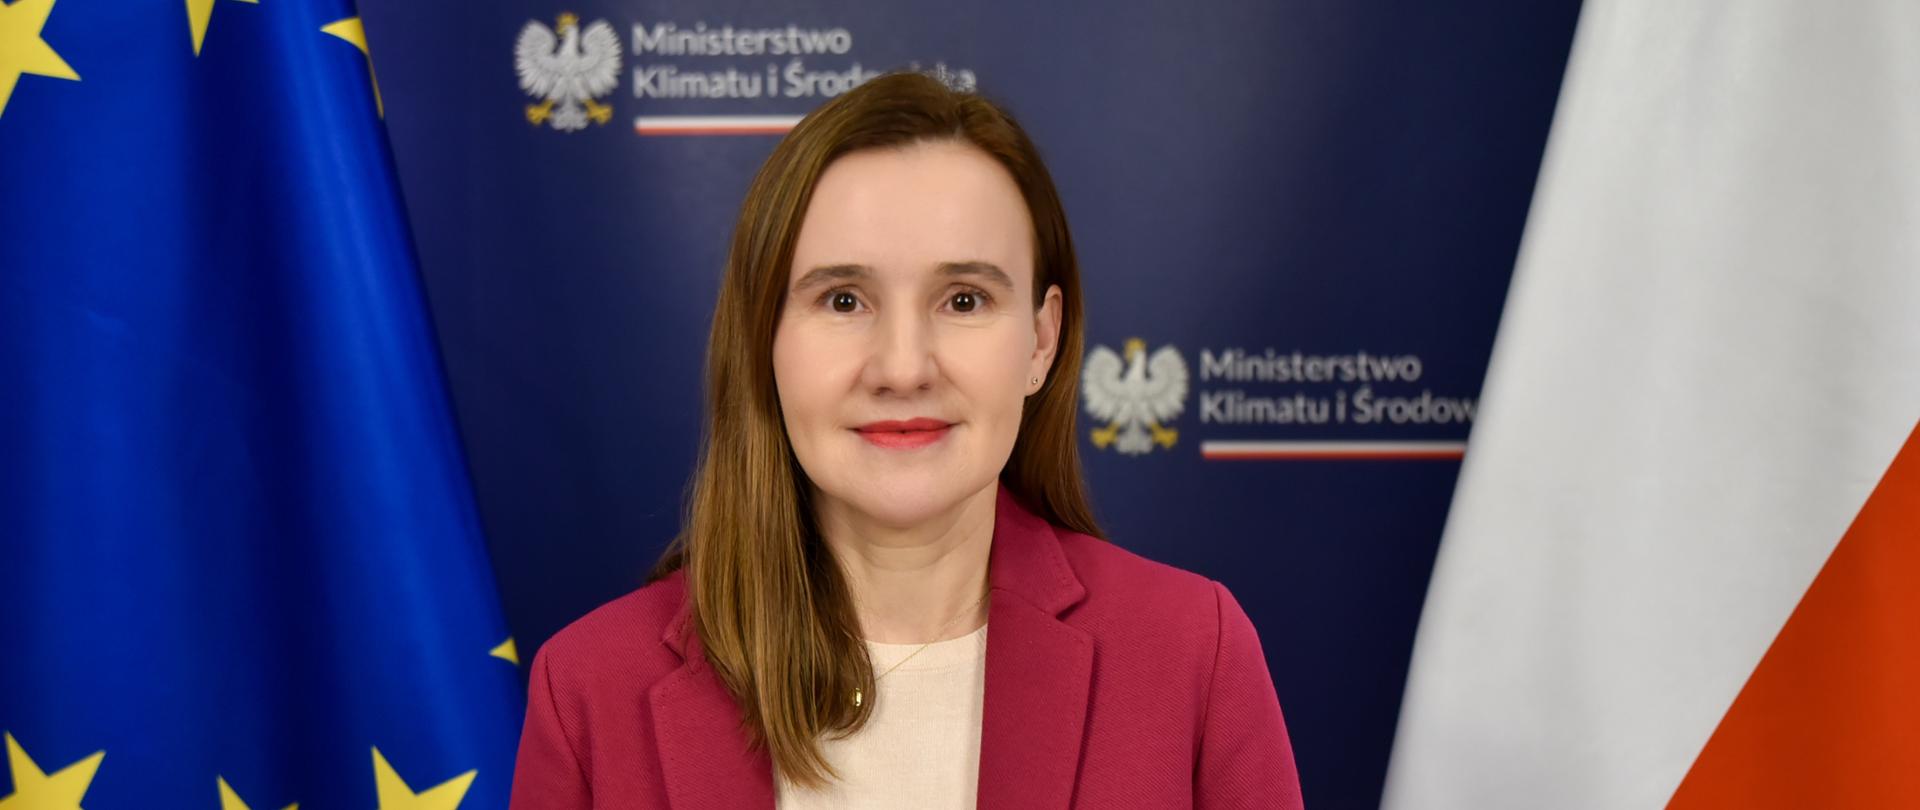 Monika Dziadkowiec